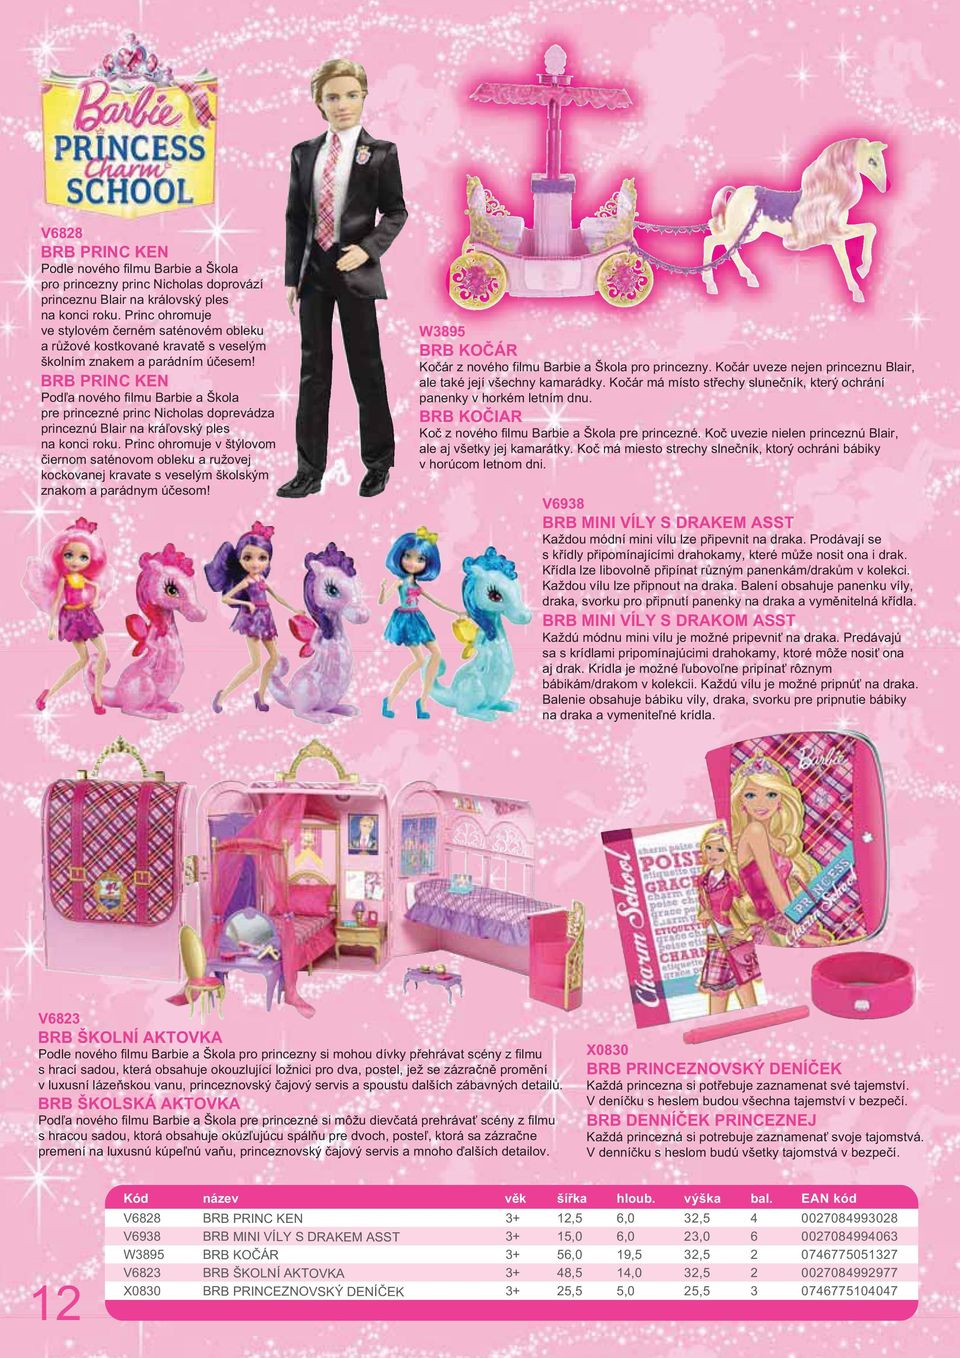 BRB PRINC KEN Podľa nového filmu Barbie a Škola pre princezné princ Nicholas doprevádza princeznú Blair na kráľovský ples na konci roku.